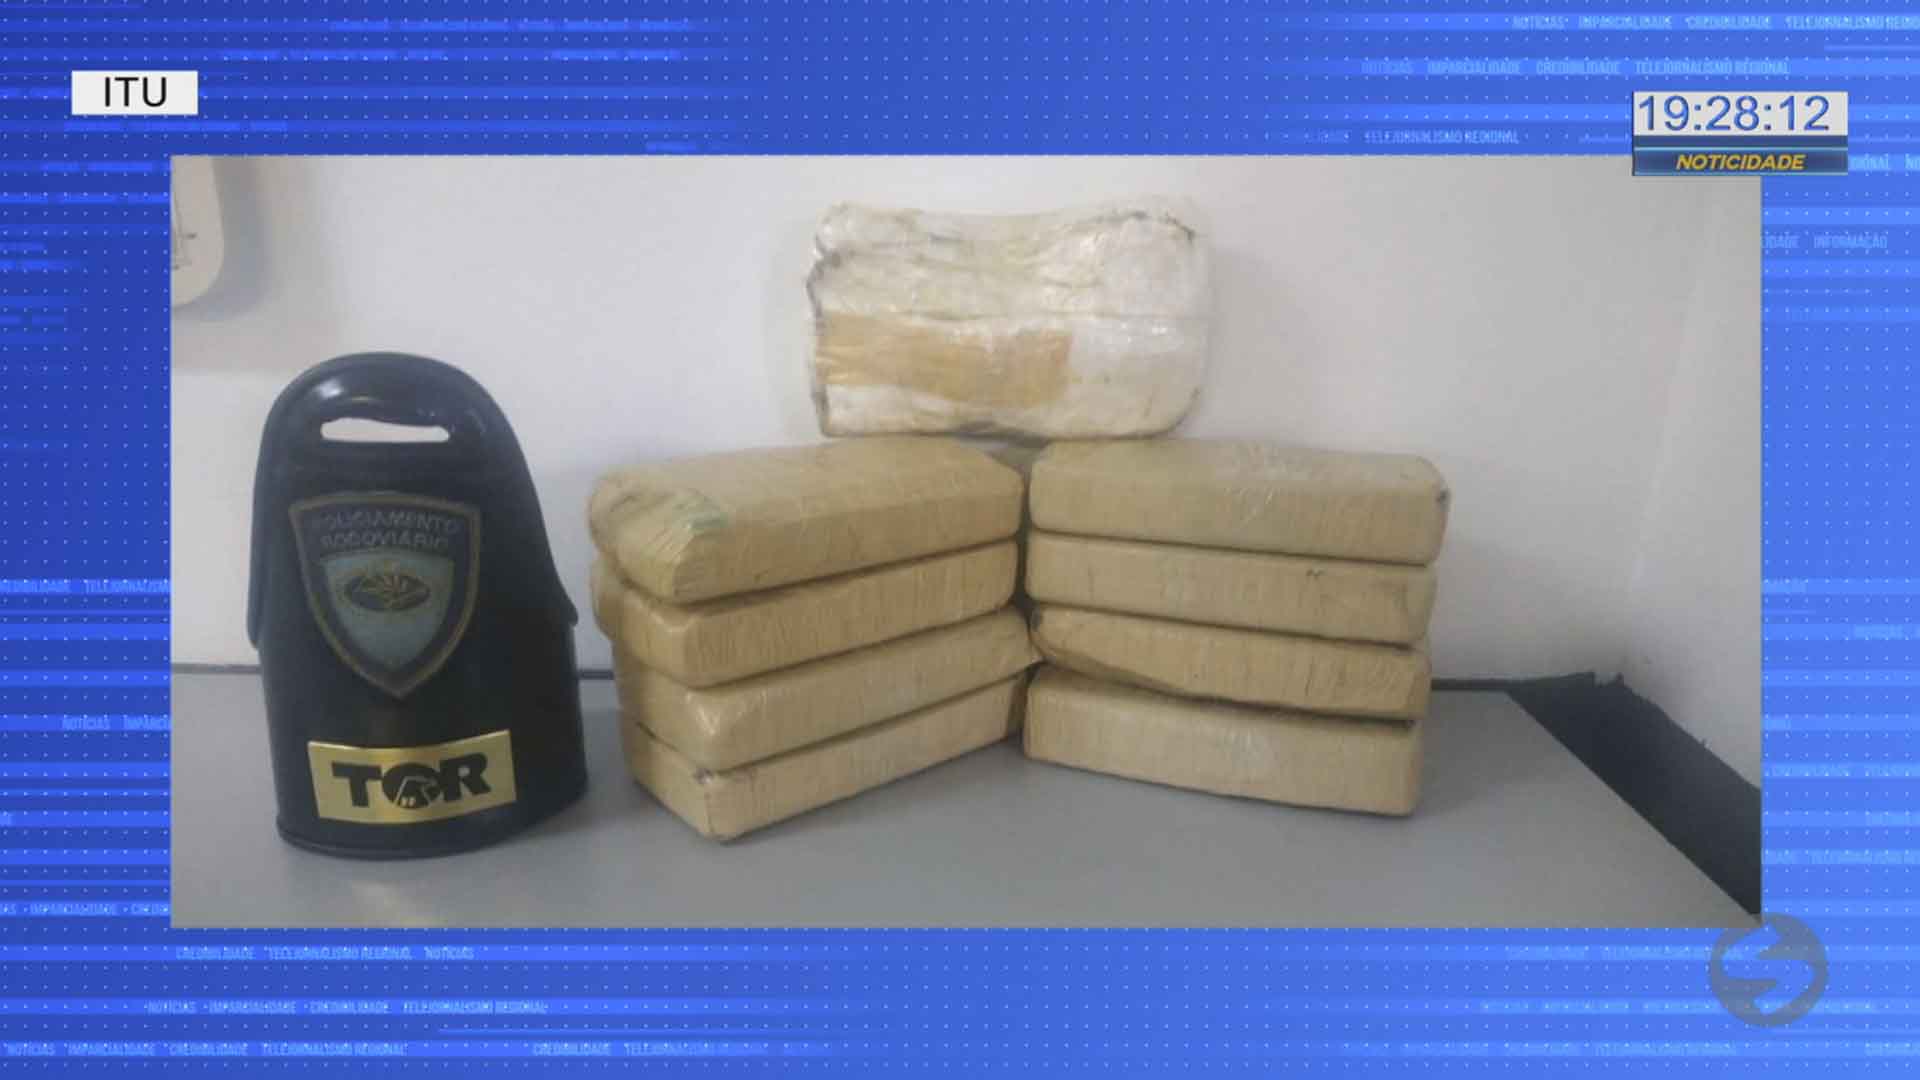 Polícia apreende pasta base de cocaína em Itu